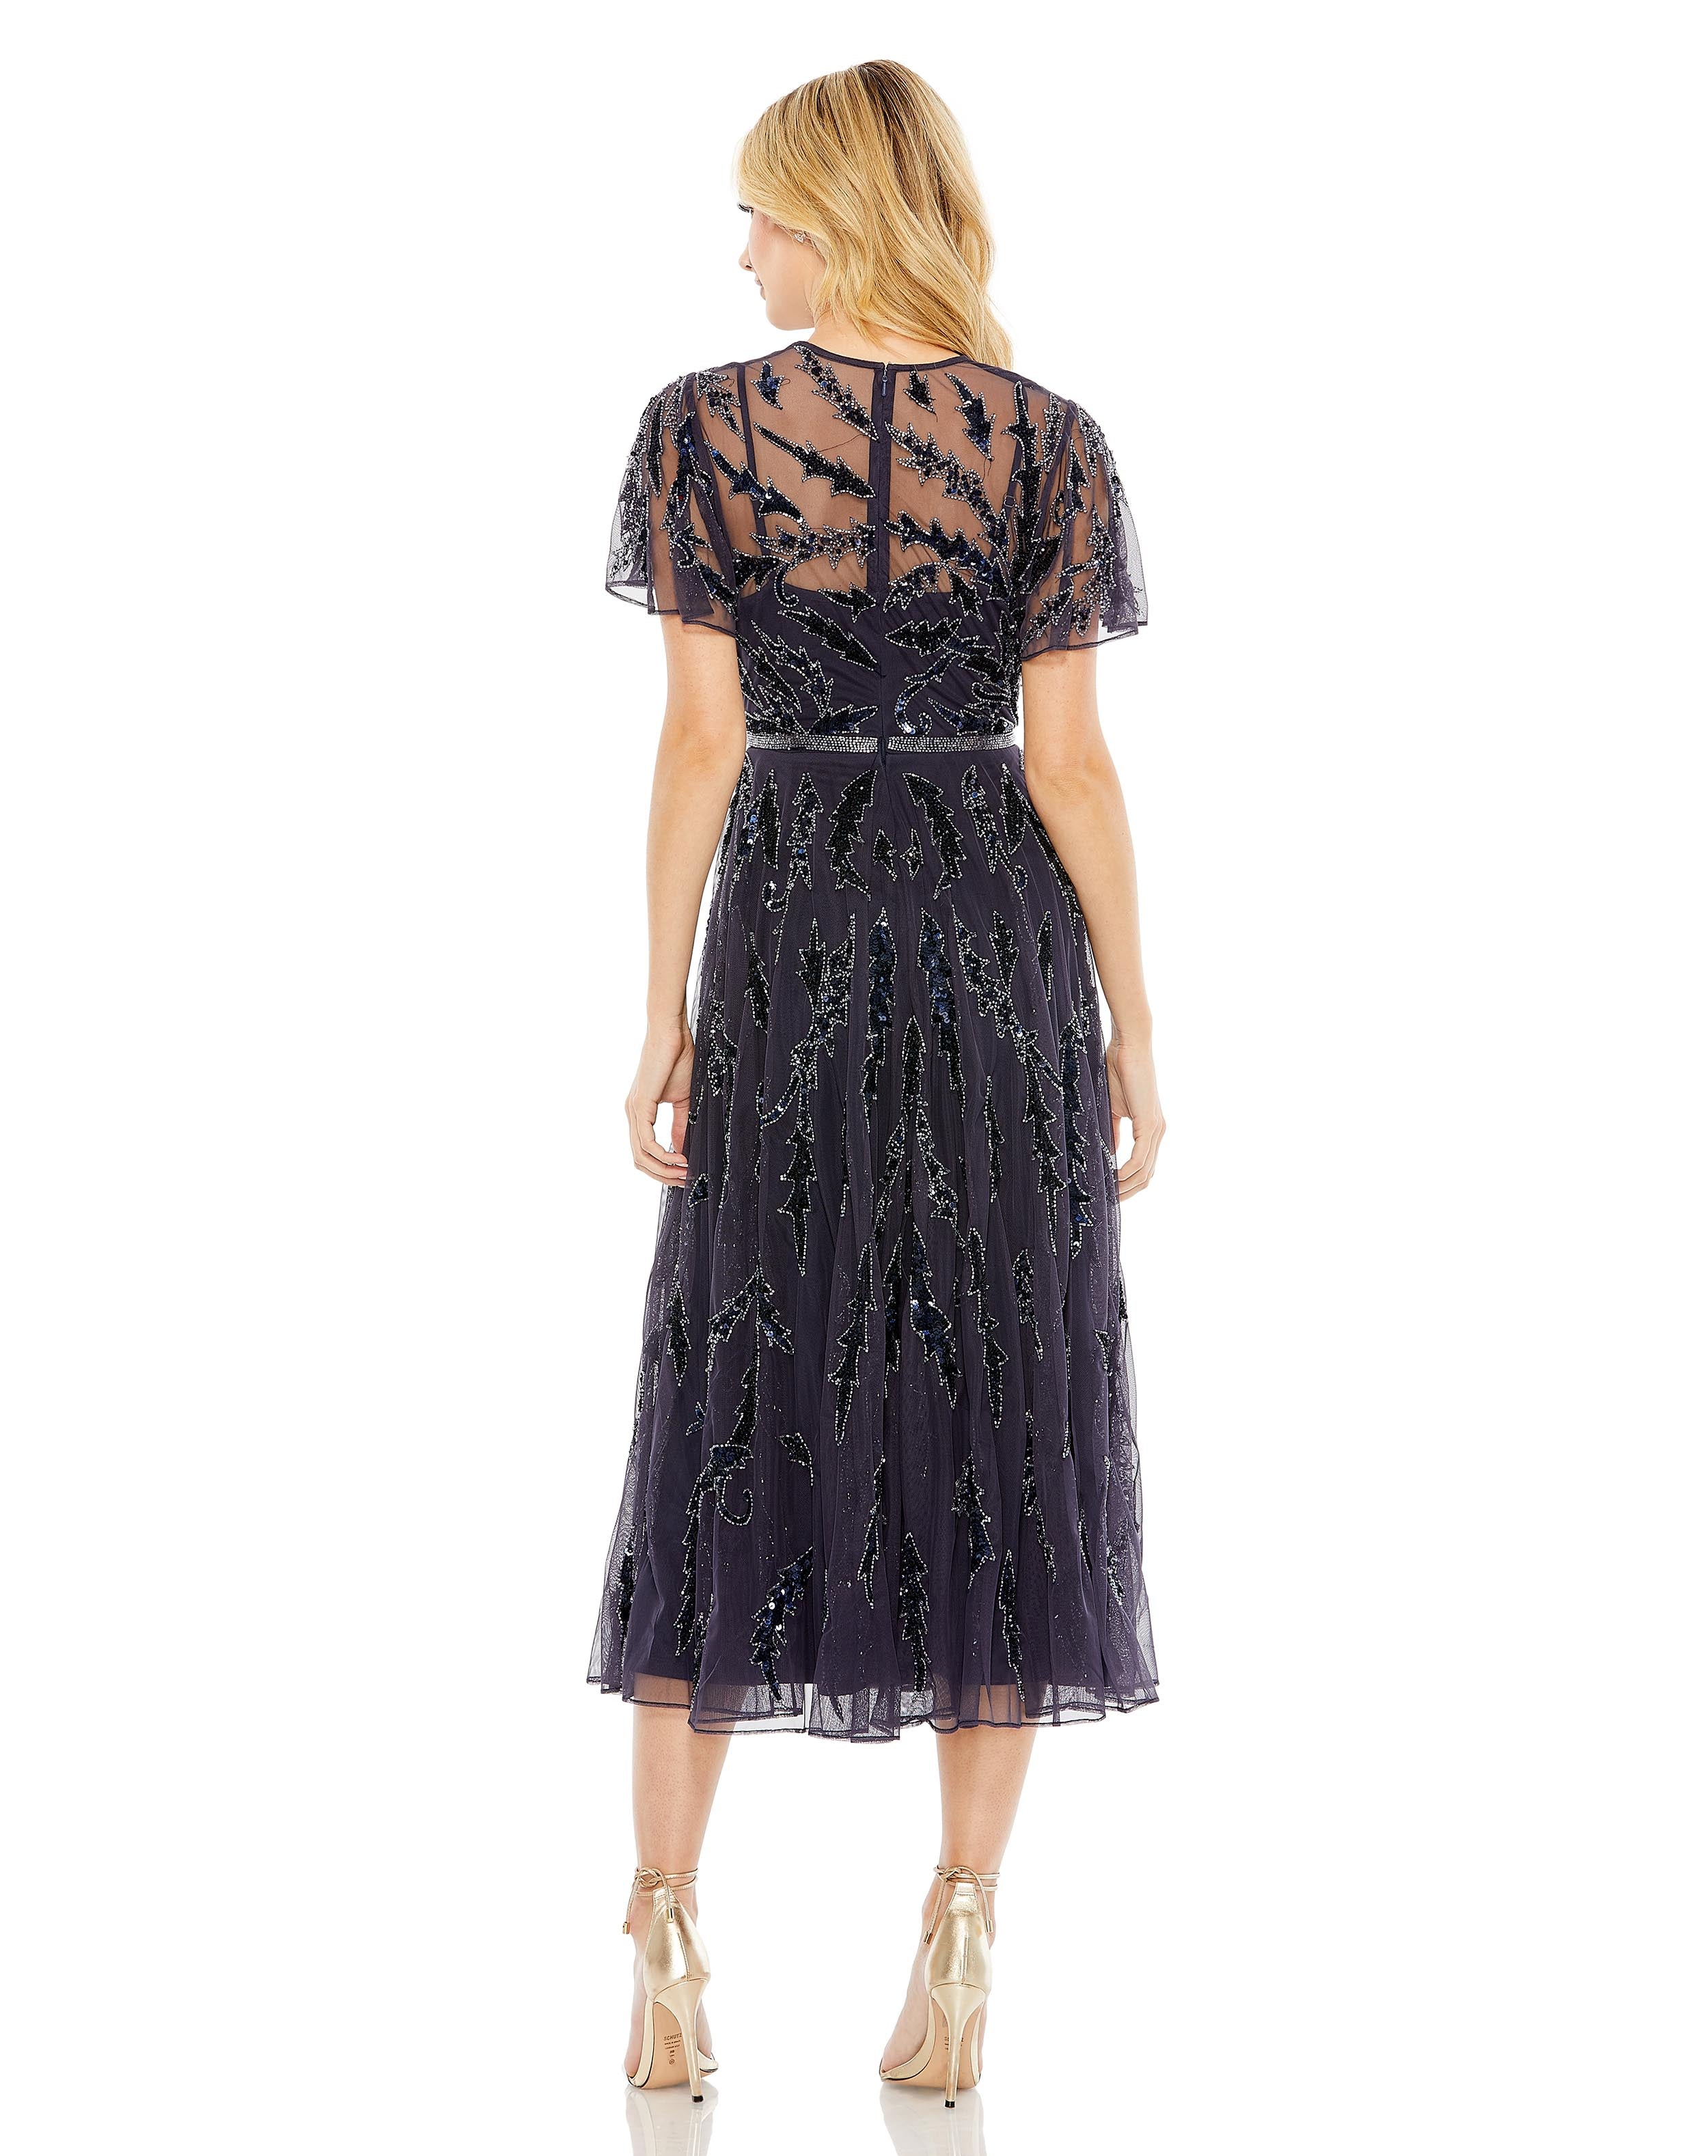 Embellished Ruffle Sleeve Dress | Sample | Sz. 4